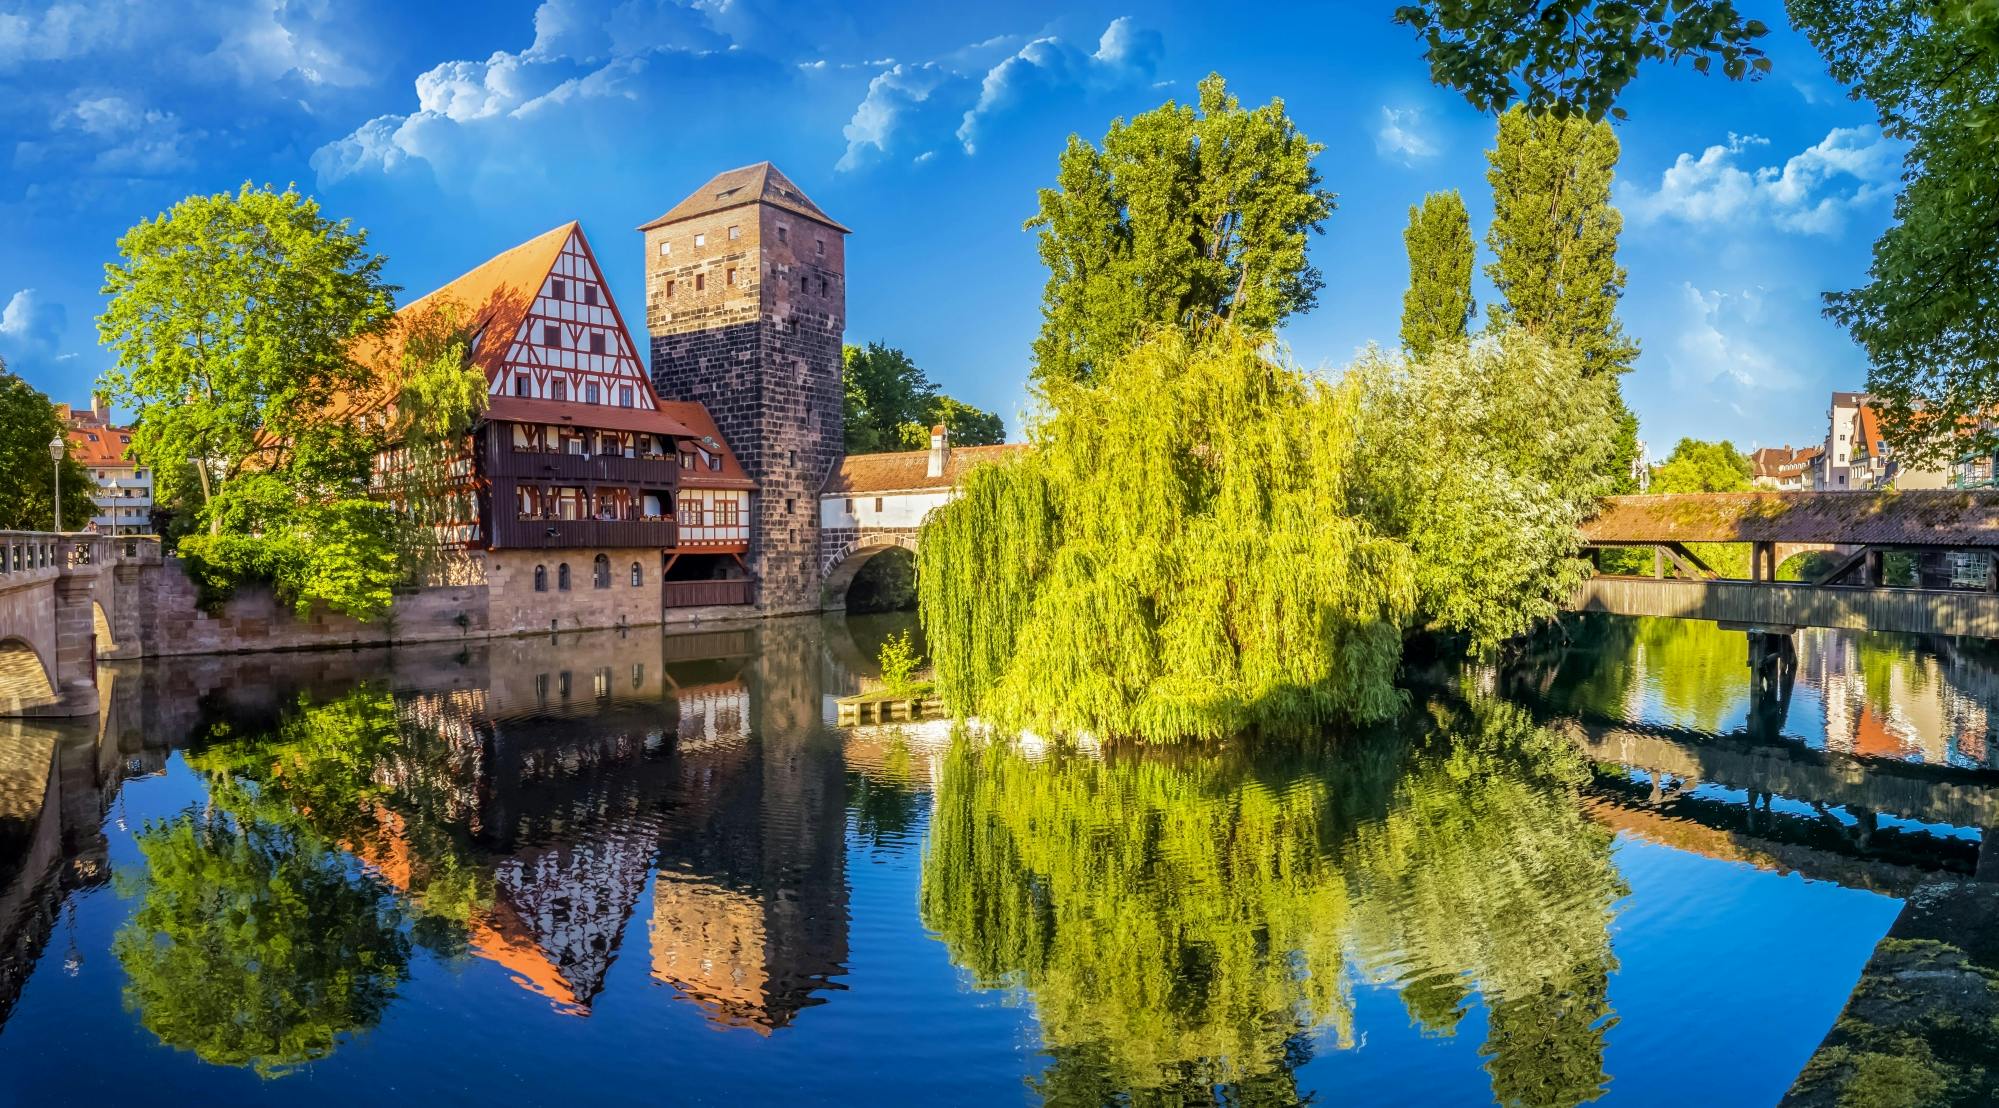 Besichtigen Sie das mittelalterliche Nürnberg in einem Stadterkundungsspiel